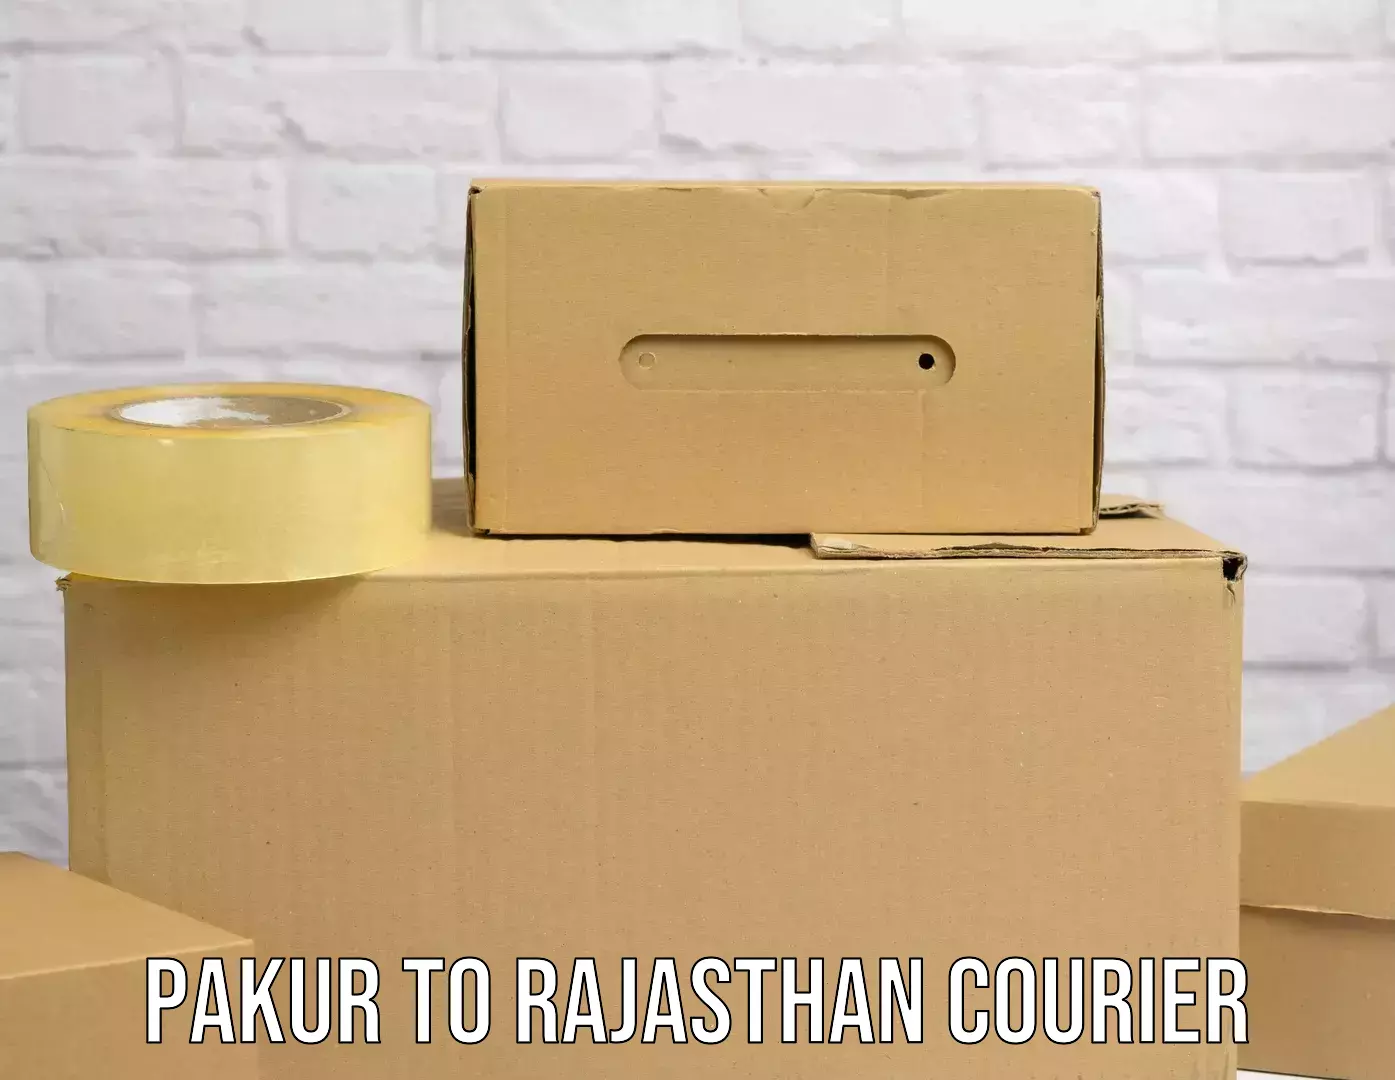 Quick dispatch service Pakur to Pratapgarh Rajasthan